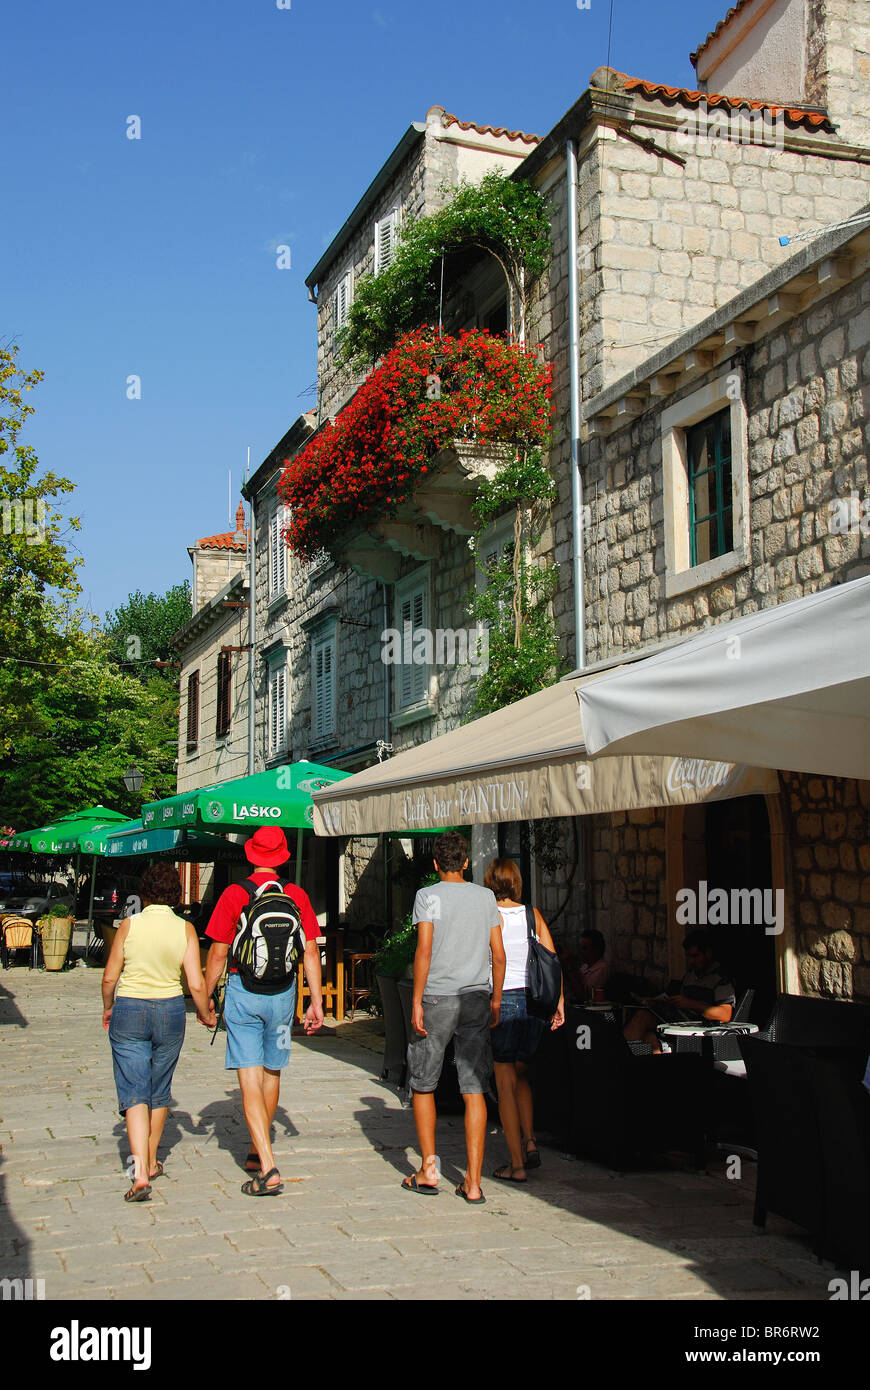 STON, penisola di Peljesac Croazia. I turisti ad esplorare le strade della città. Foto Stock